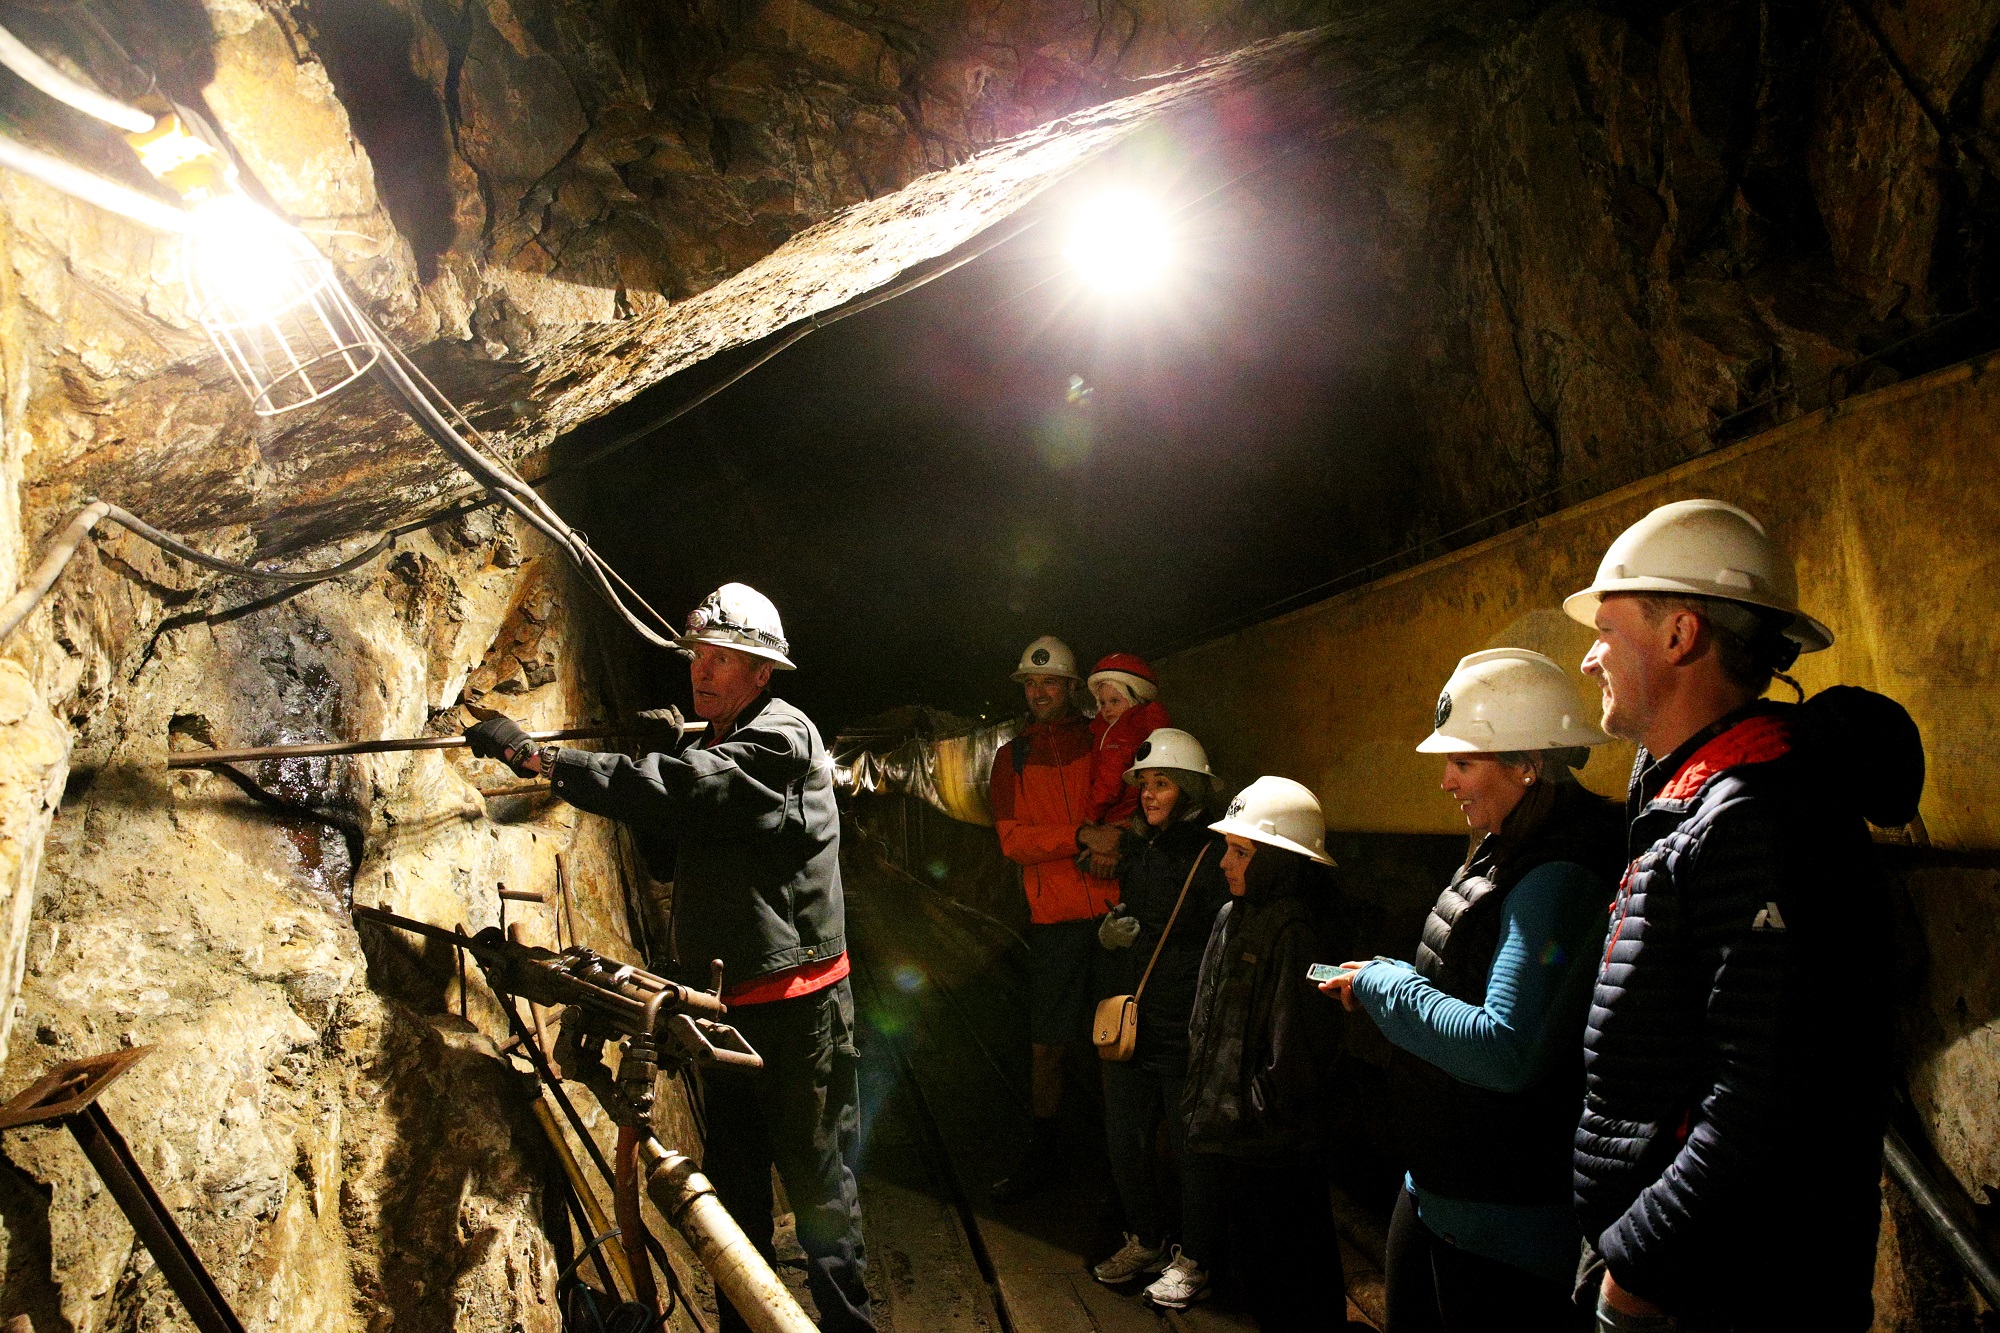 The historic restored Country Boy Mine in Breckenridge